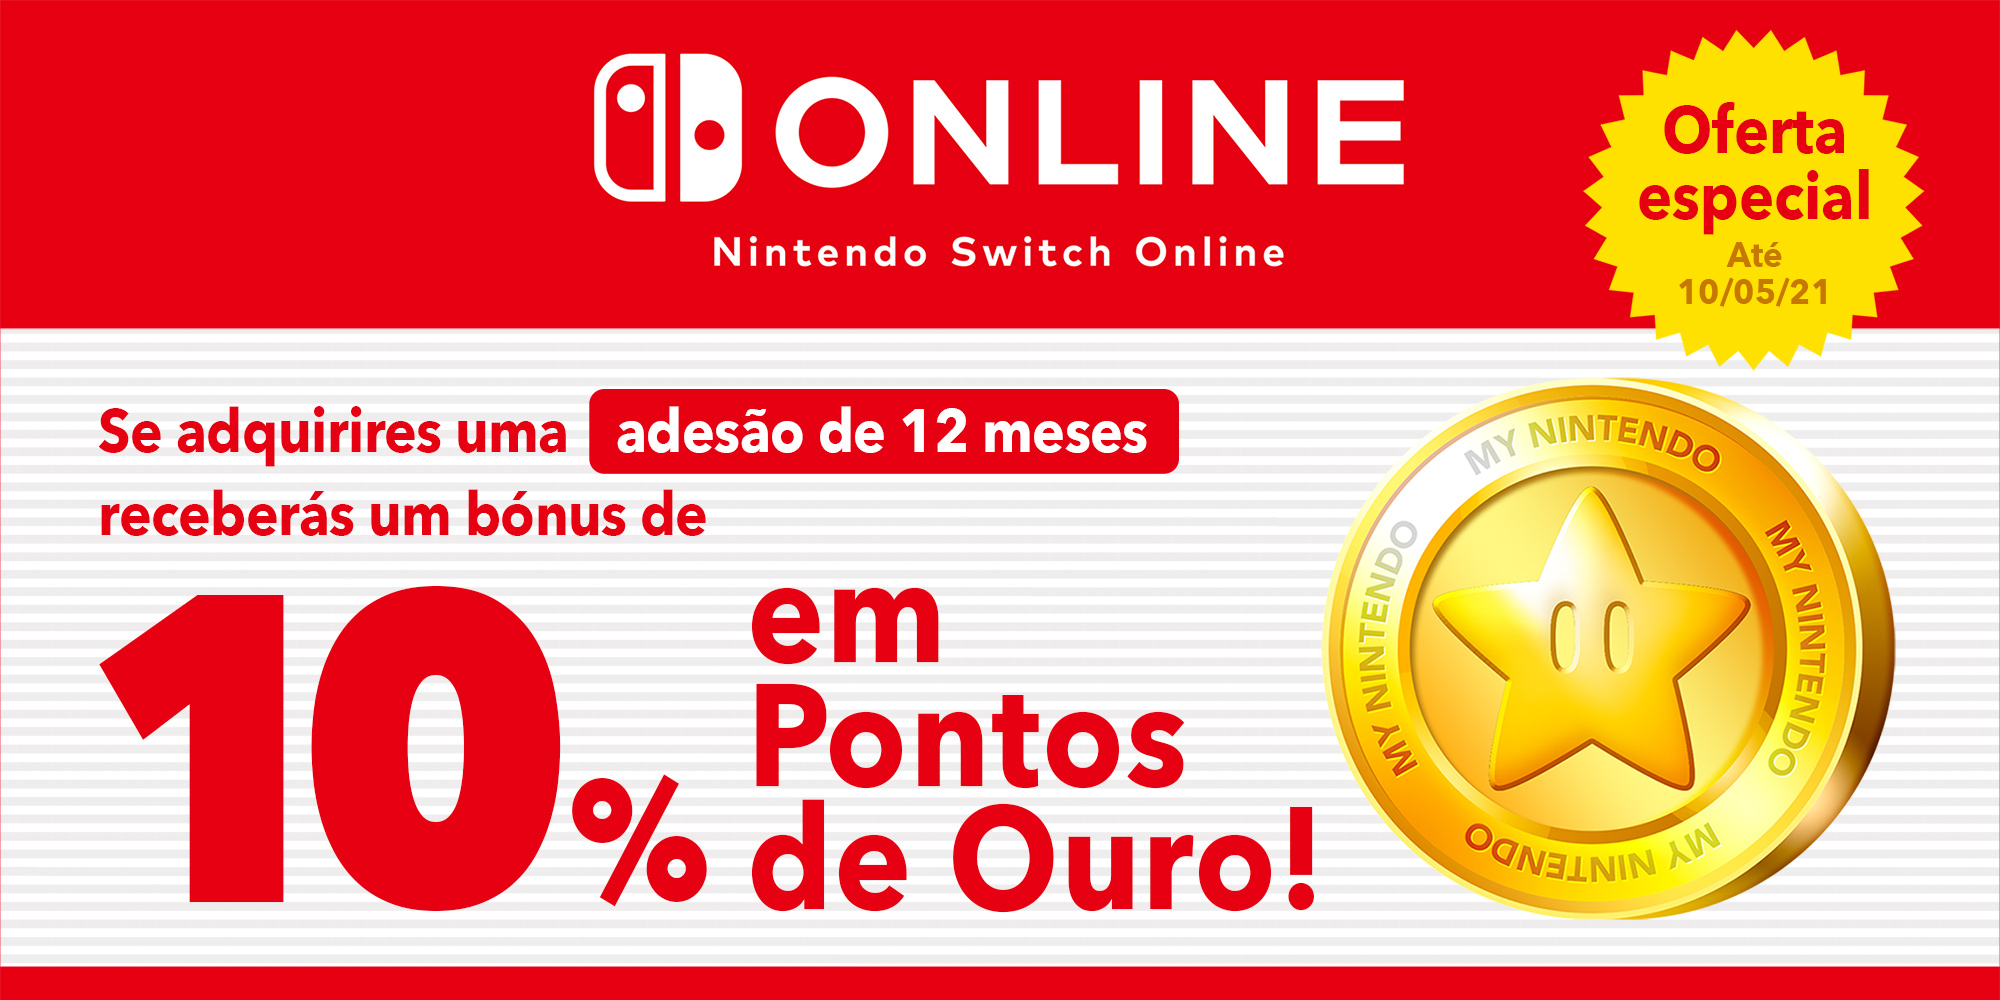 Adquire uma adesão de 12 meses do serviço Nintendo Switch Online e ganha até €3,50!